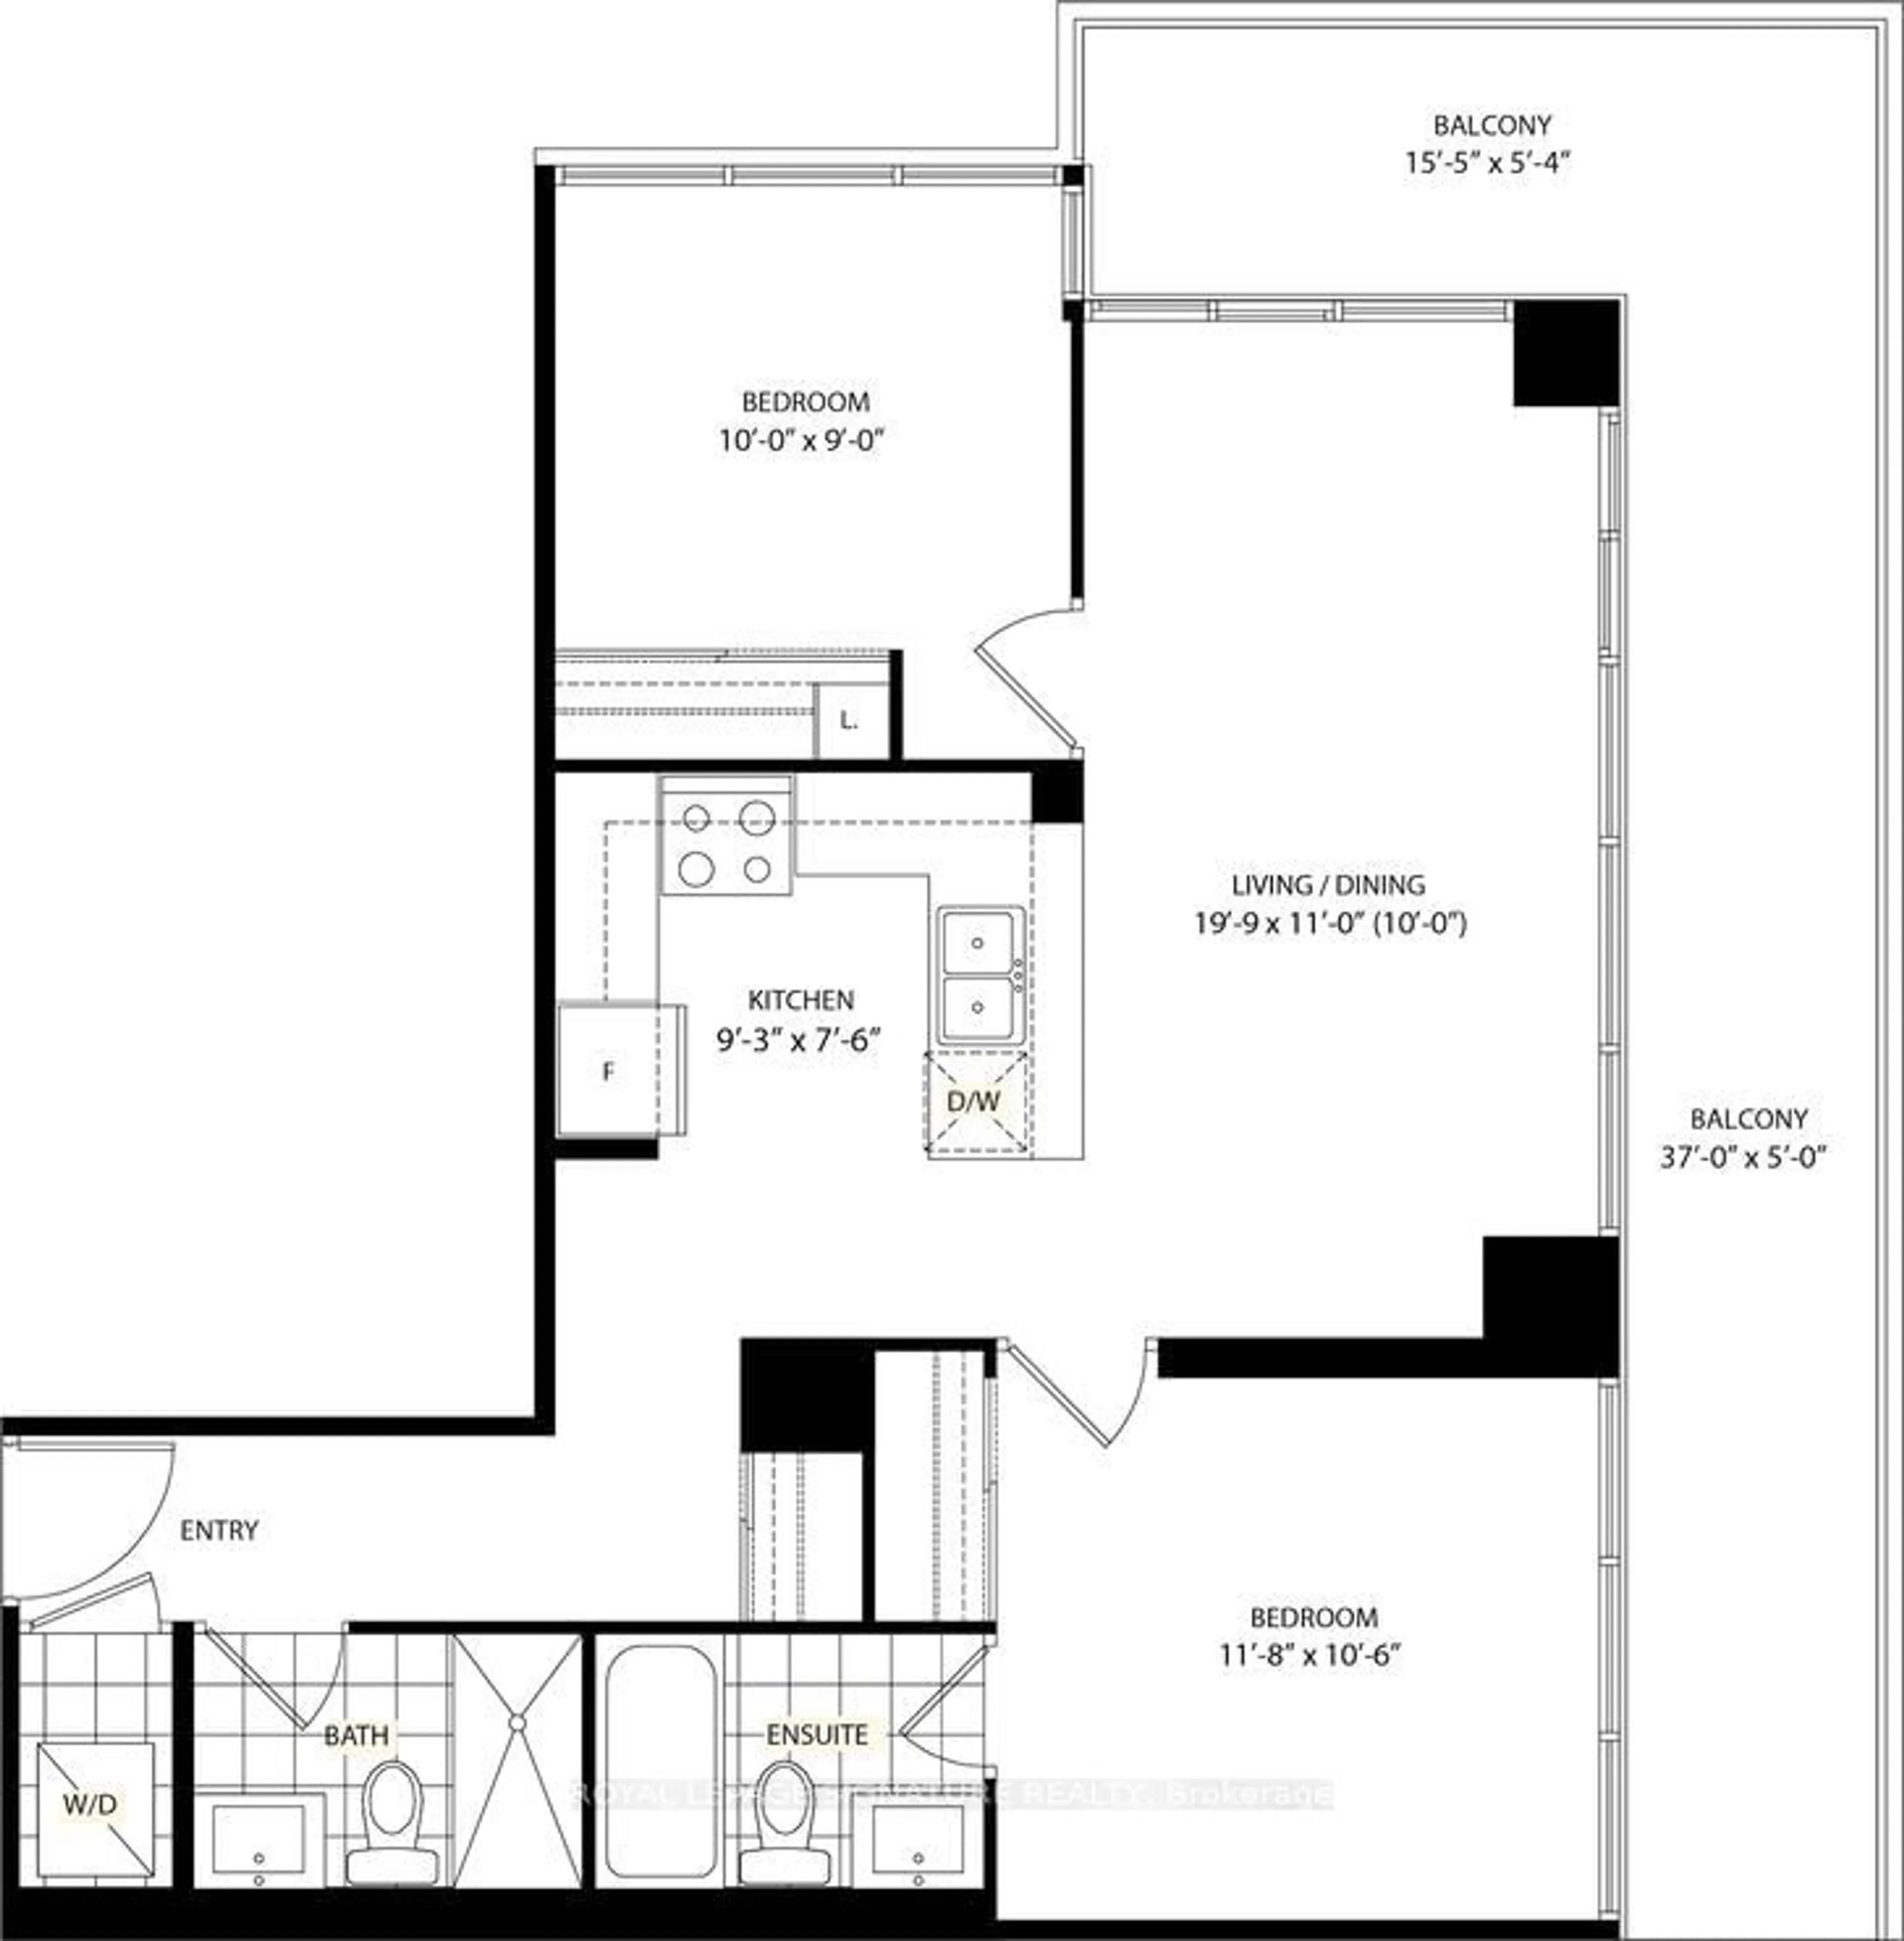 Floor plan for 1185 The Queensway #520, Toronto Ontario M8Z 0C6